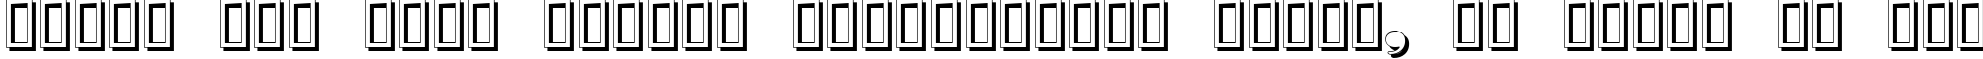 Пример написания шрифтом Nubian Shadow текста на русском